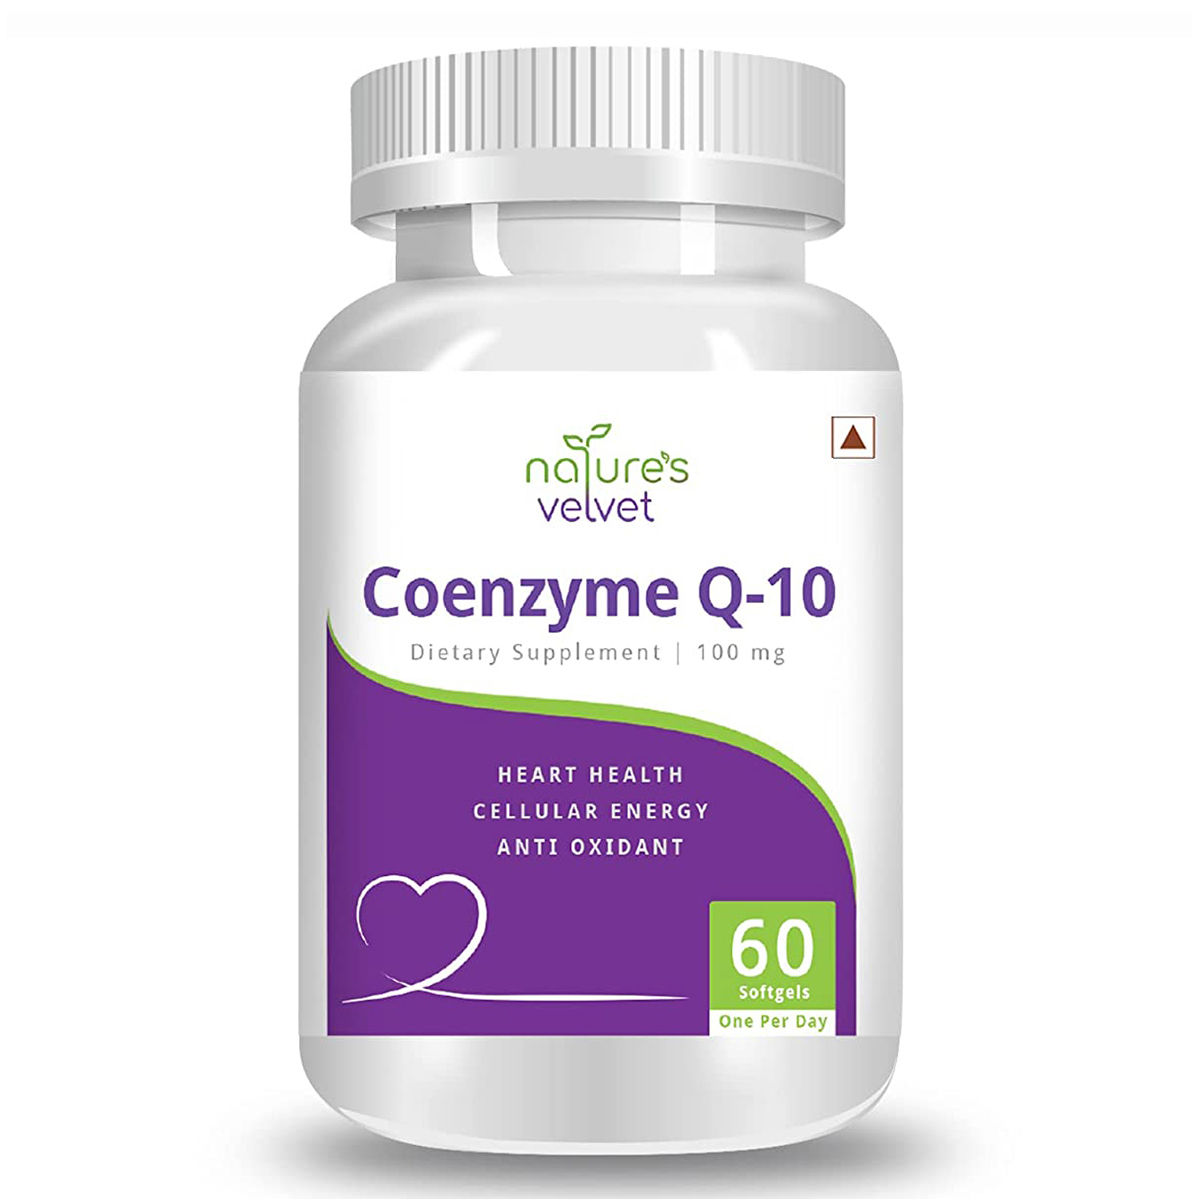 Buy Nature's Velvet Coenzyme Q-10 100 mg, 60 Softgels Online